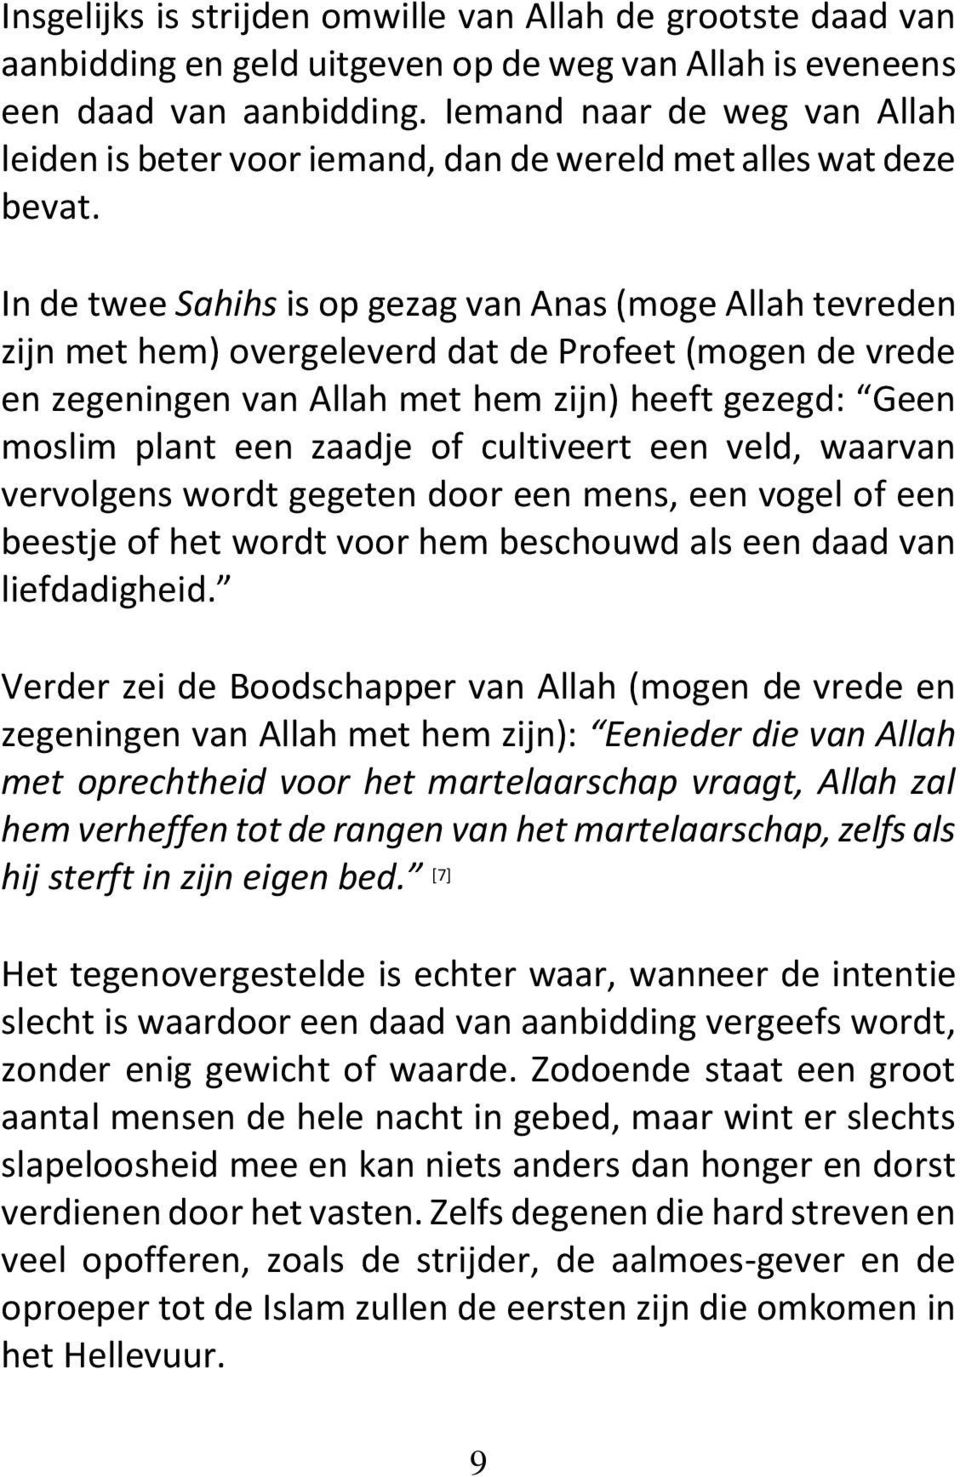 In de twee Sahihs is op gezag van Anas (moge Allah tevreden zijn met hem) overgeleverd dat de Profeet (mogen de vrede en zegeningen van Allah met hem zijn) heeft gezegd: Geen moslim plant een zaadje